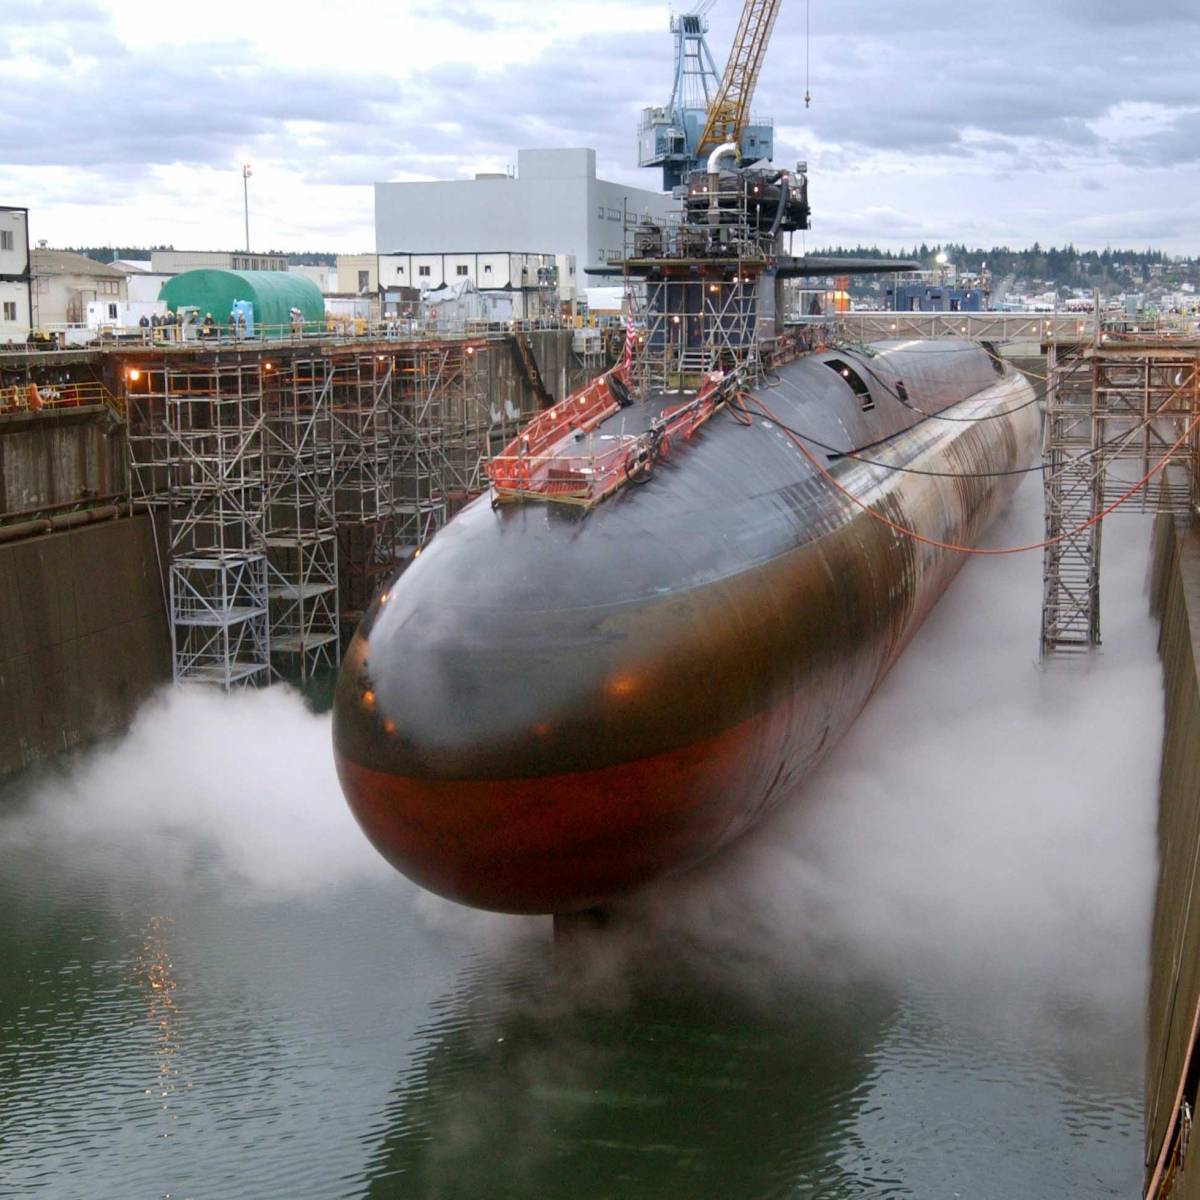 ТОП-5 субмарин, которые смогут уничтожить человечество за считанные минуты